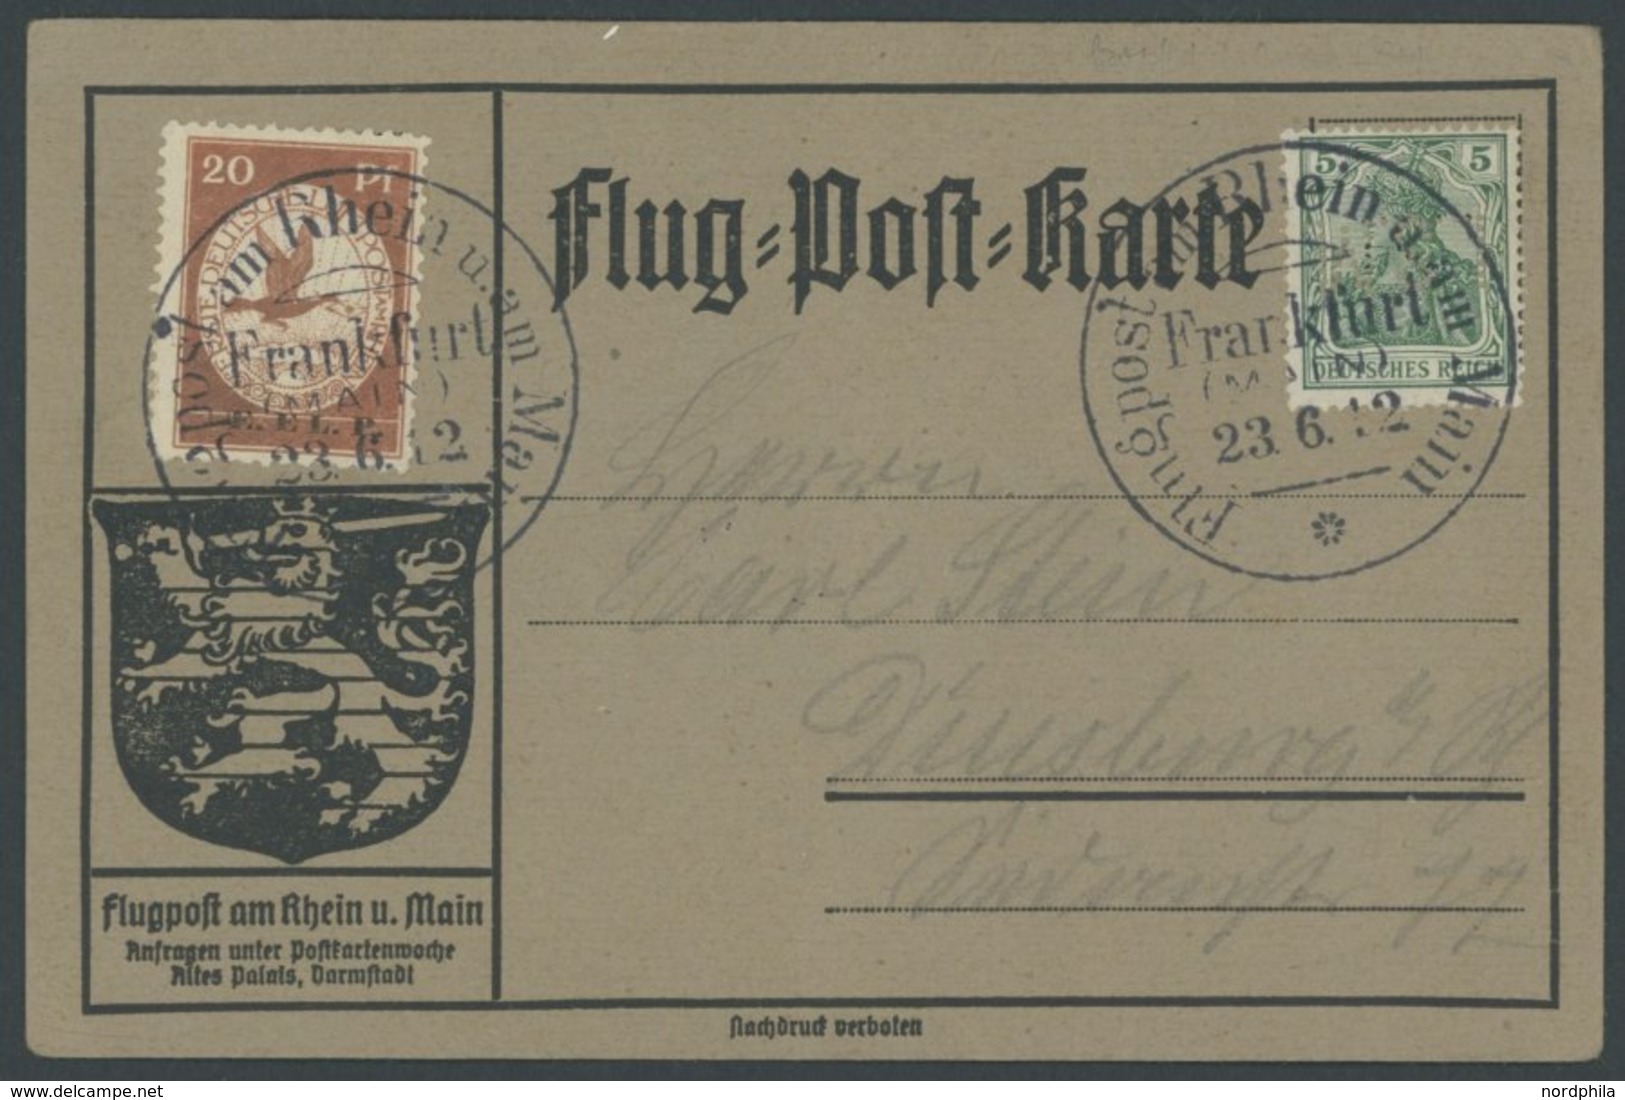 ZEPPELINPOST 15 BRIEF, 1912, 20 Pf. E.L.P. (Farbe Etwas Oxydiert) Auf Flugpostkarte Mit Nur 5 Pf. Zusatzfrankatur, Sonde - Zeppelins